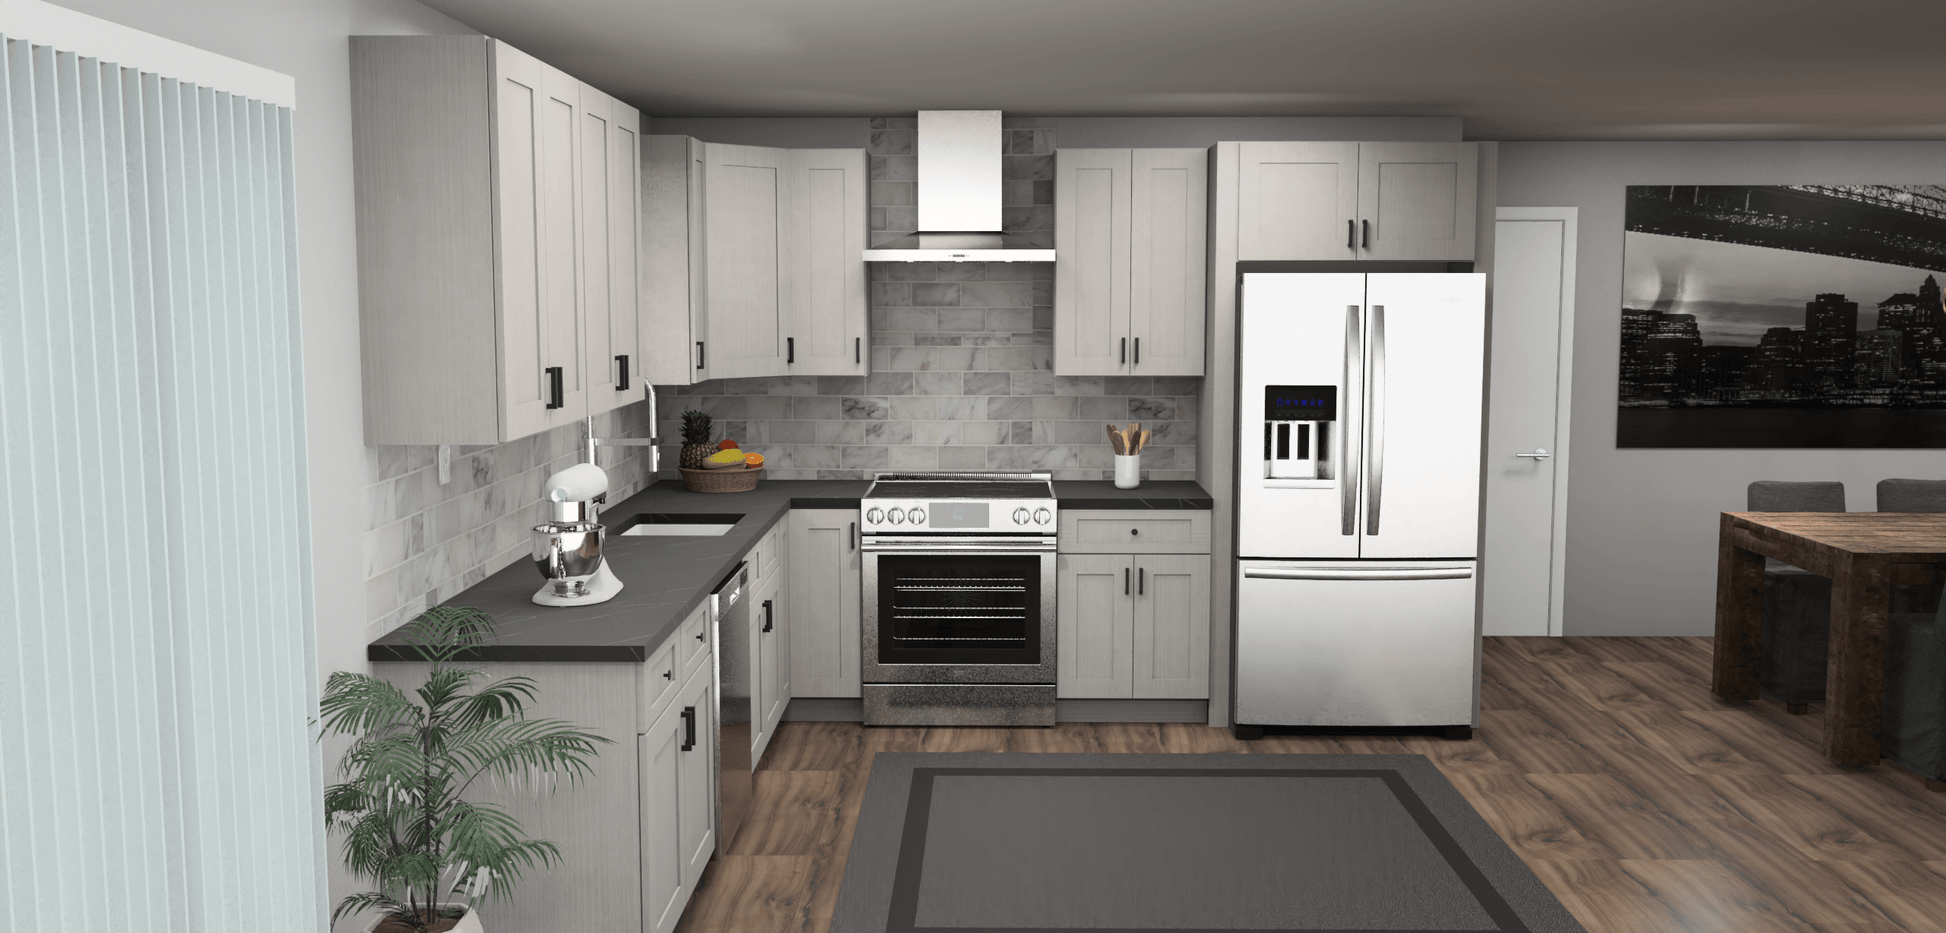 Fabuwood Allure Galaxy Horizon 11 x 11 L Shaped Kitchen Front Layout Photo